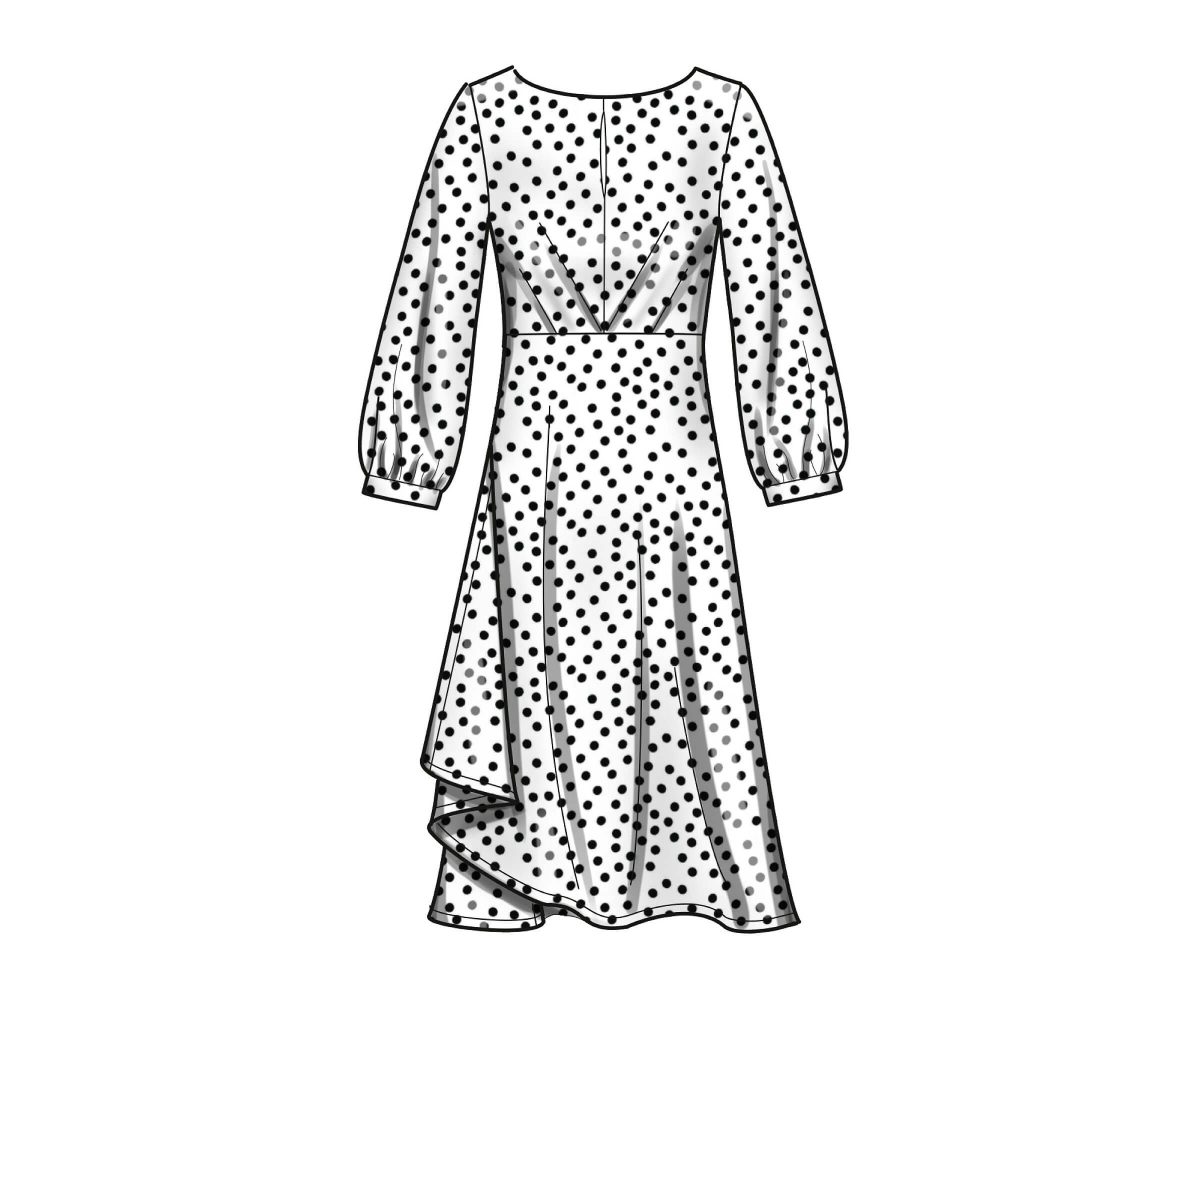 New Look Sewing Pattern N6655 Misses' Dresses